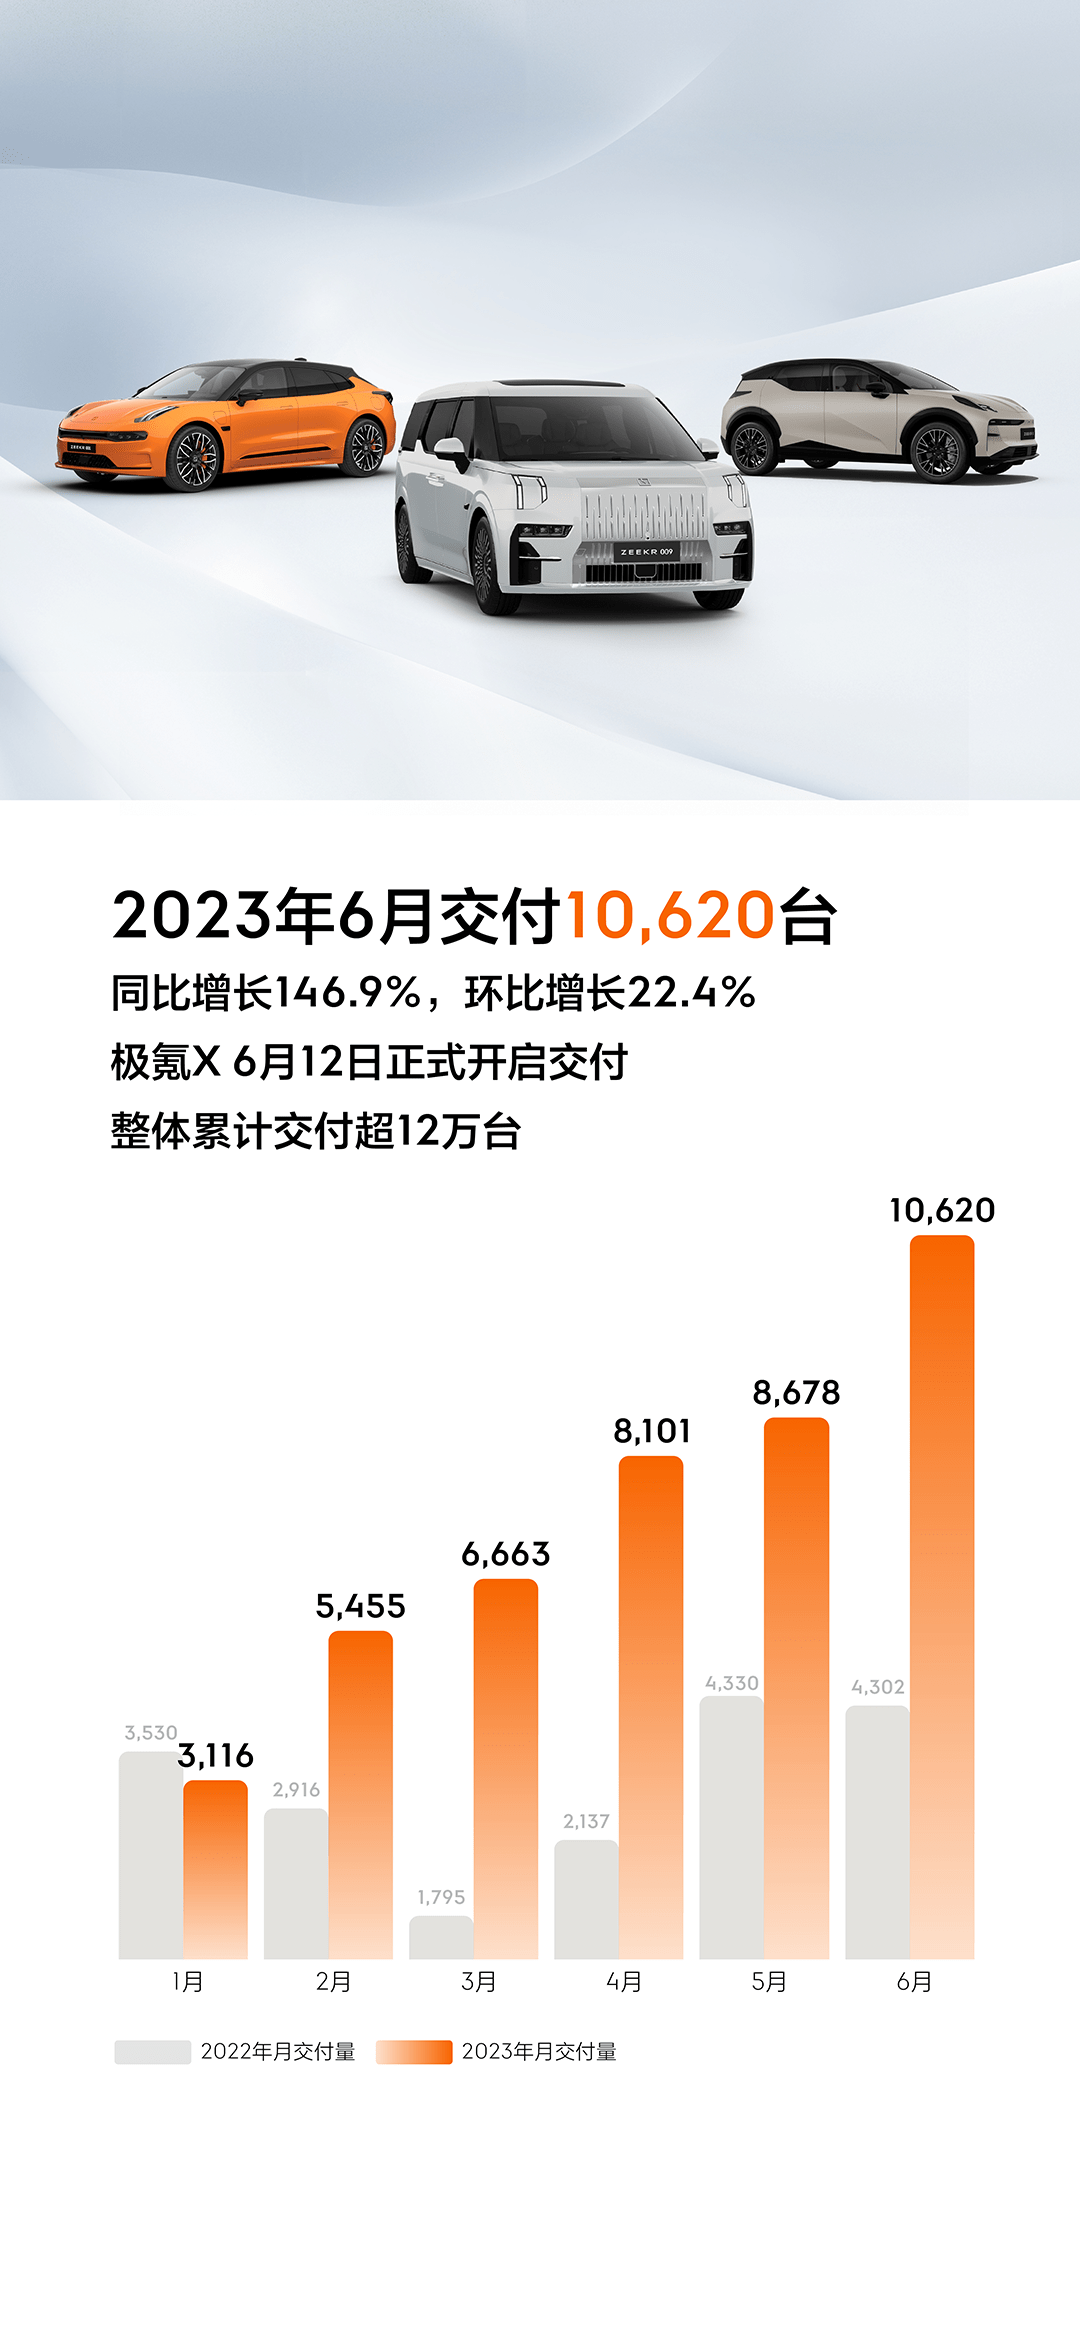 吉利极氪晒6月成绩：交付10620辆 环比增长22.4%